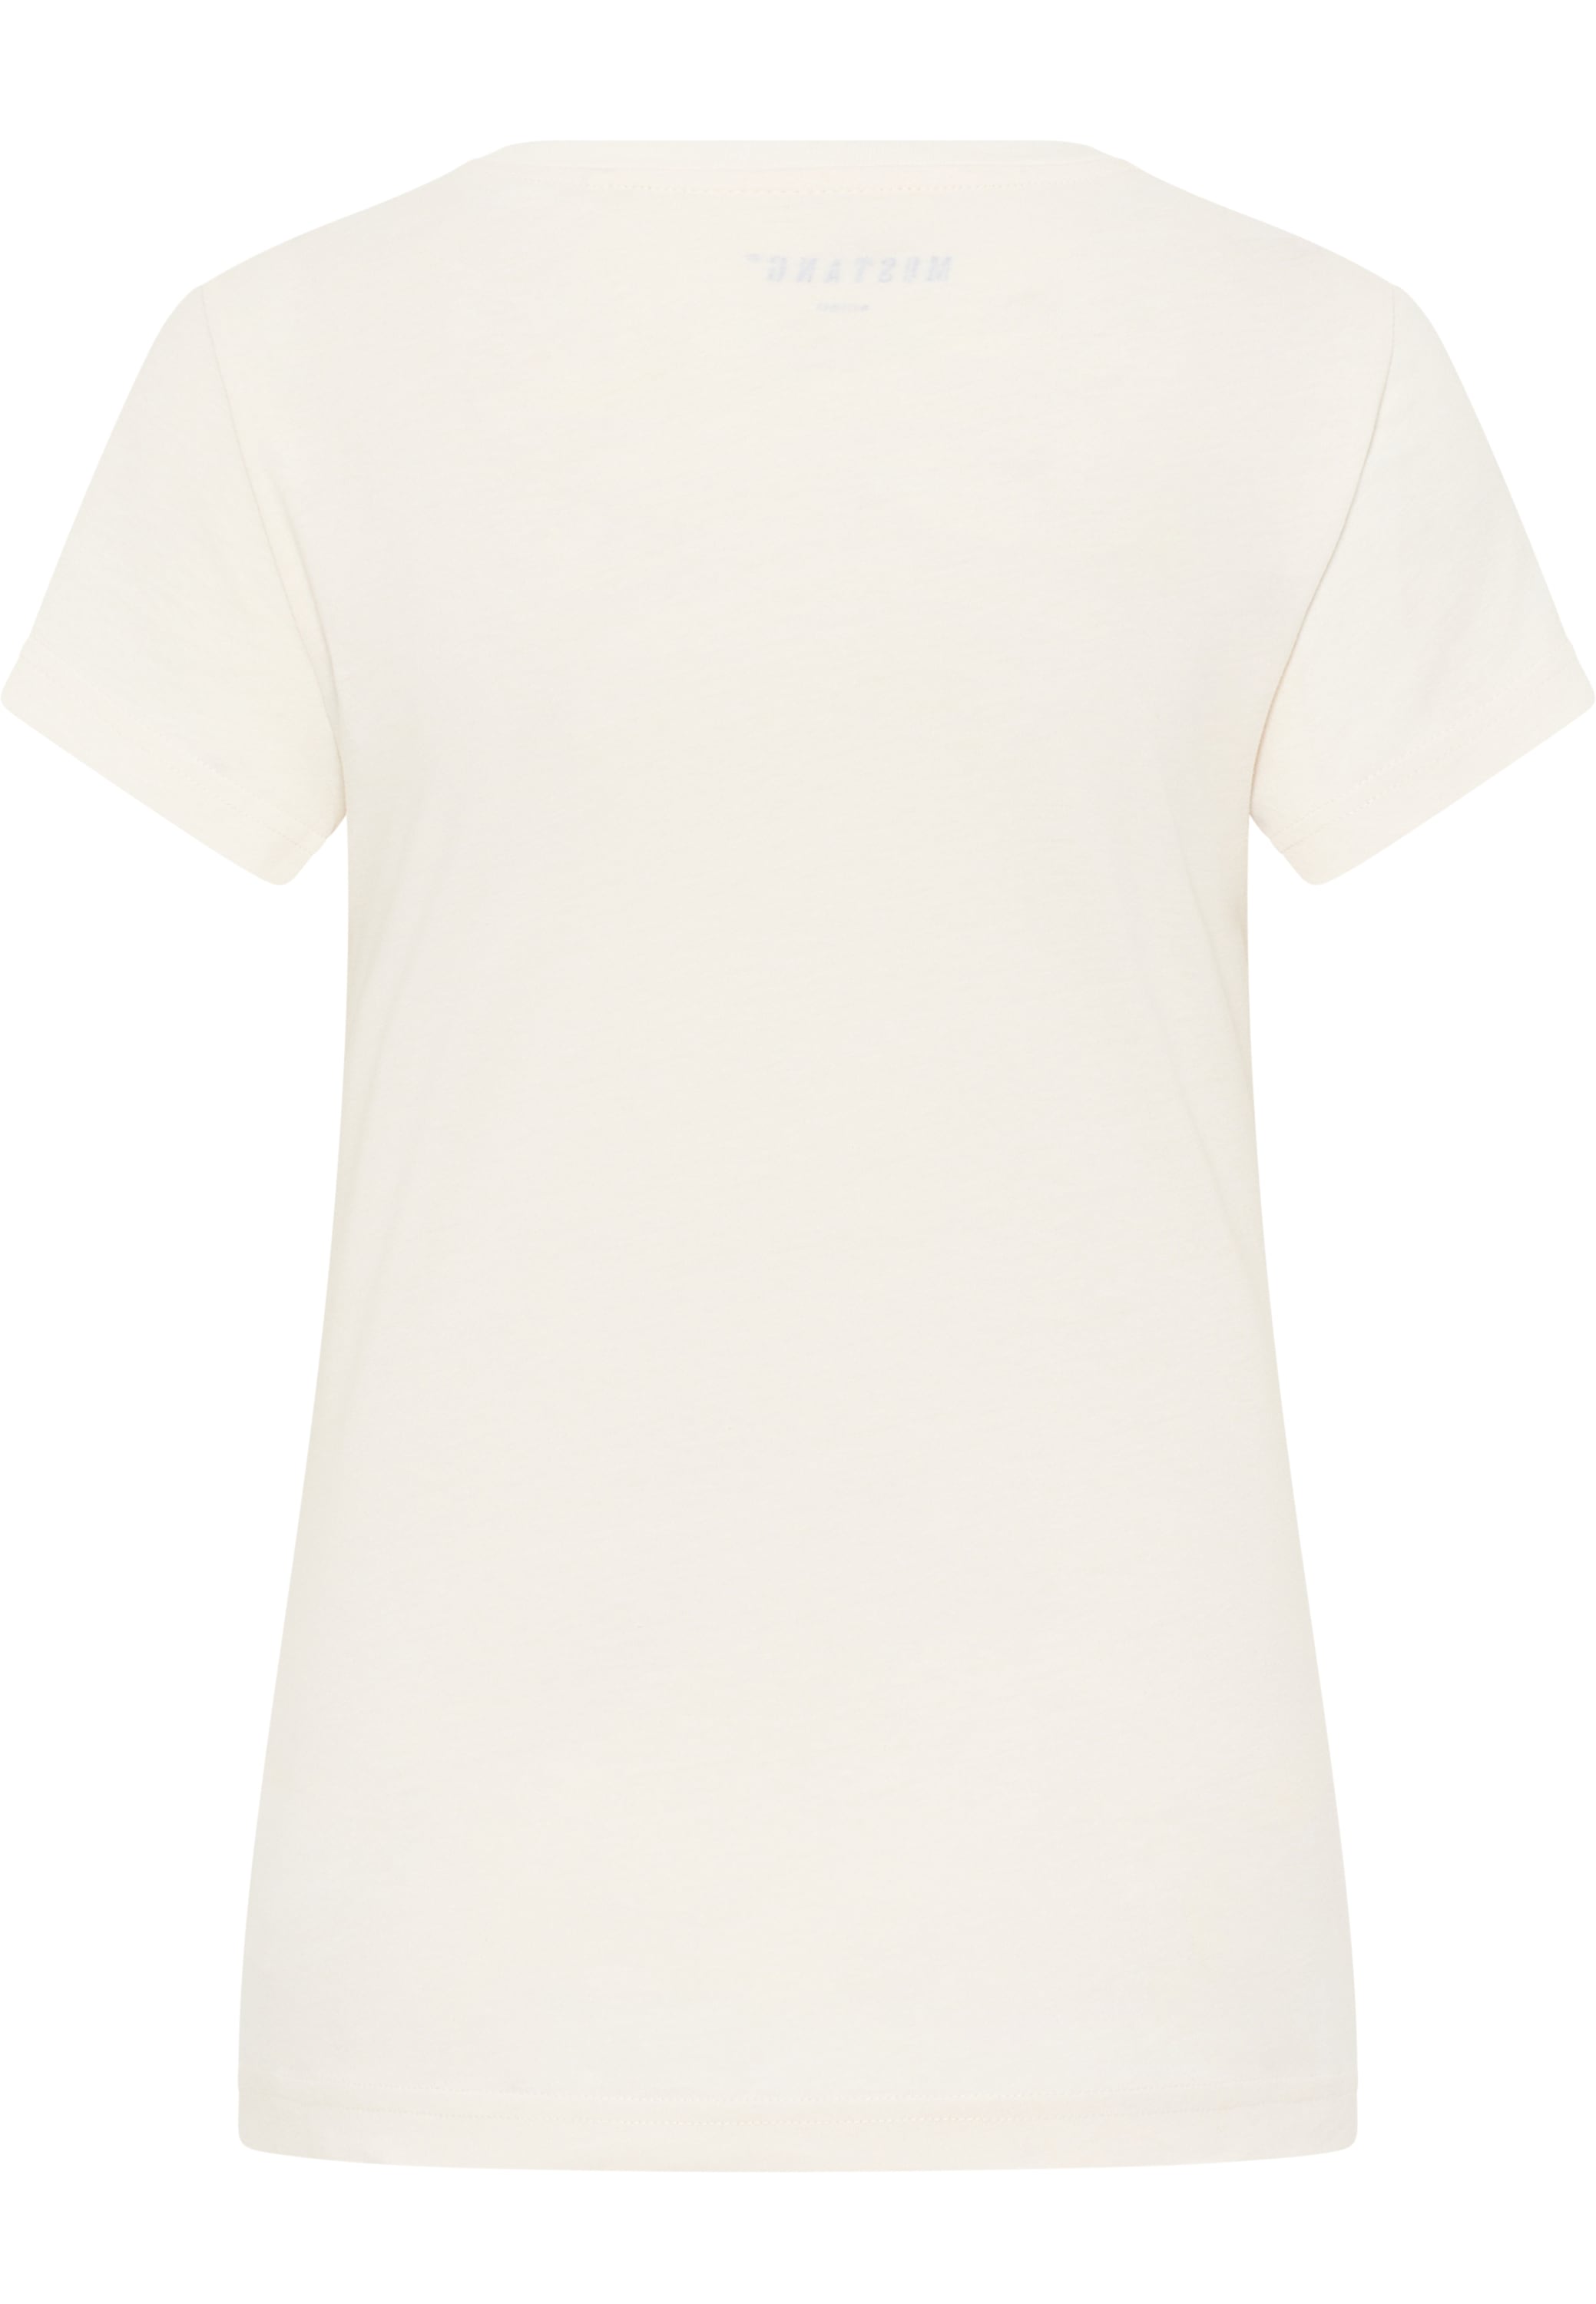 MUSTANG Kurzarmshirt »T-Shirt« im OTTO Online Shop